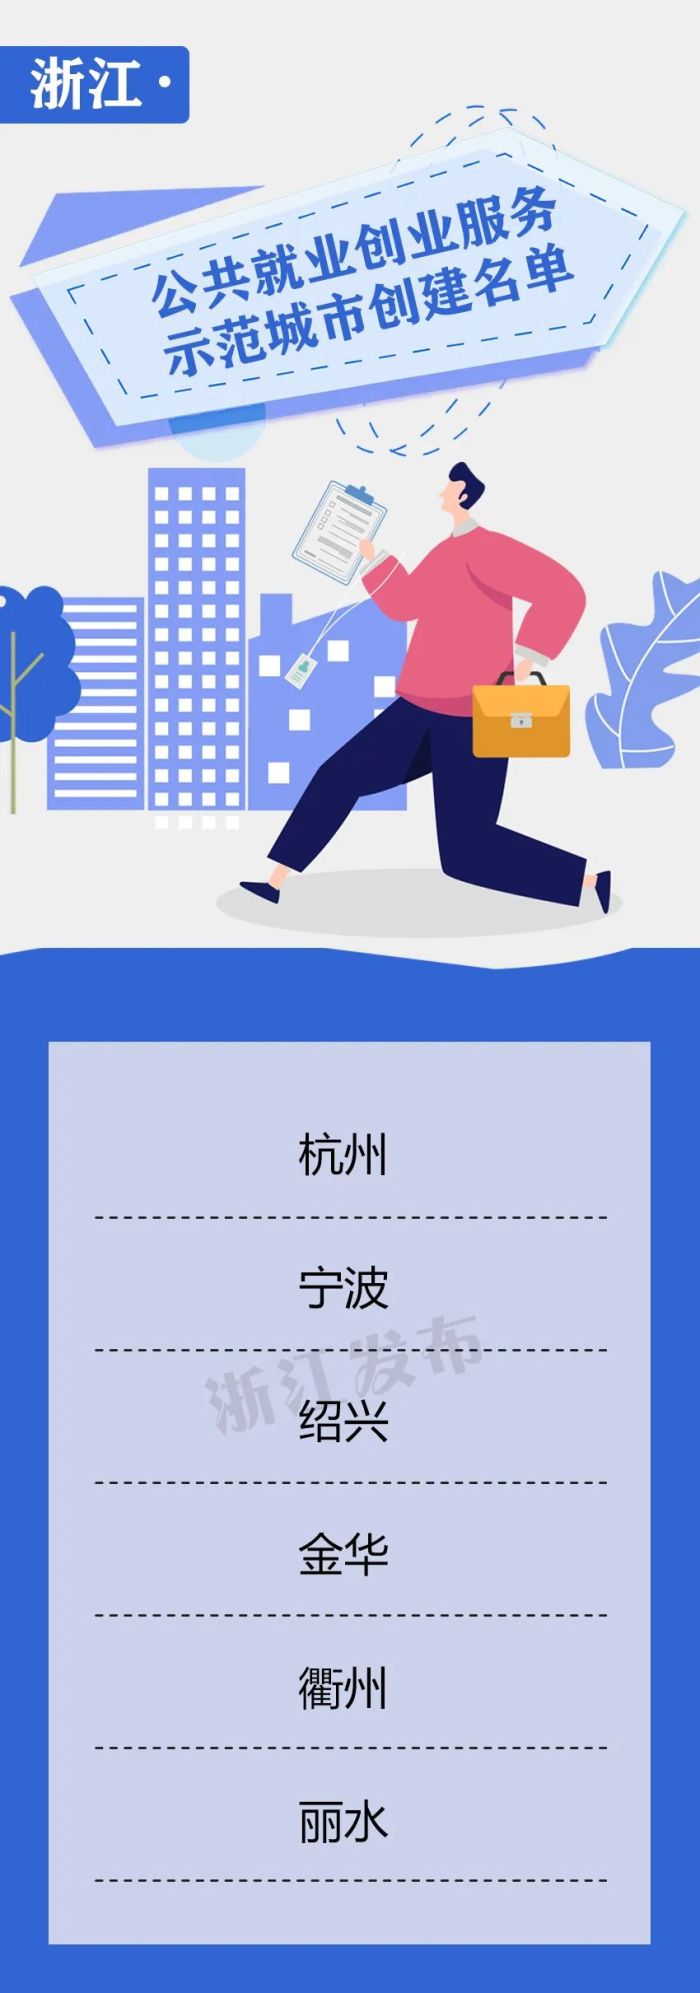 全国公共就业创业服务示范城市创建名单公布，包括宁波在内浙江6地入选